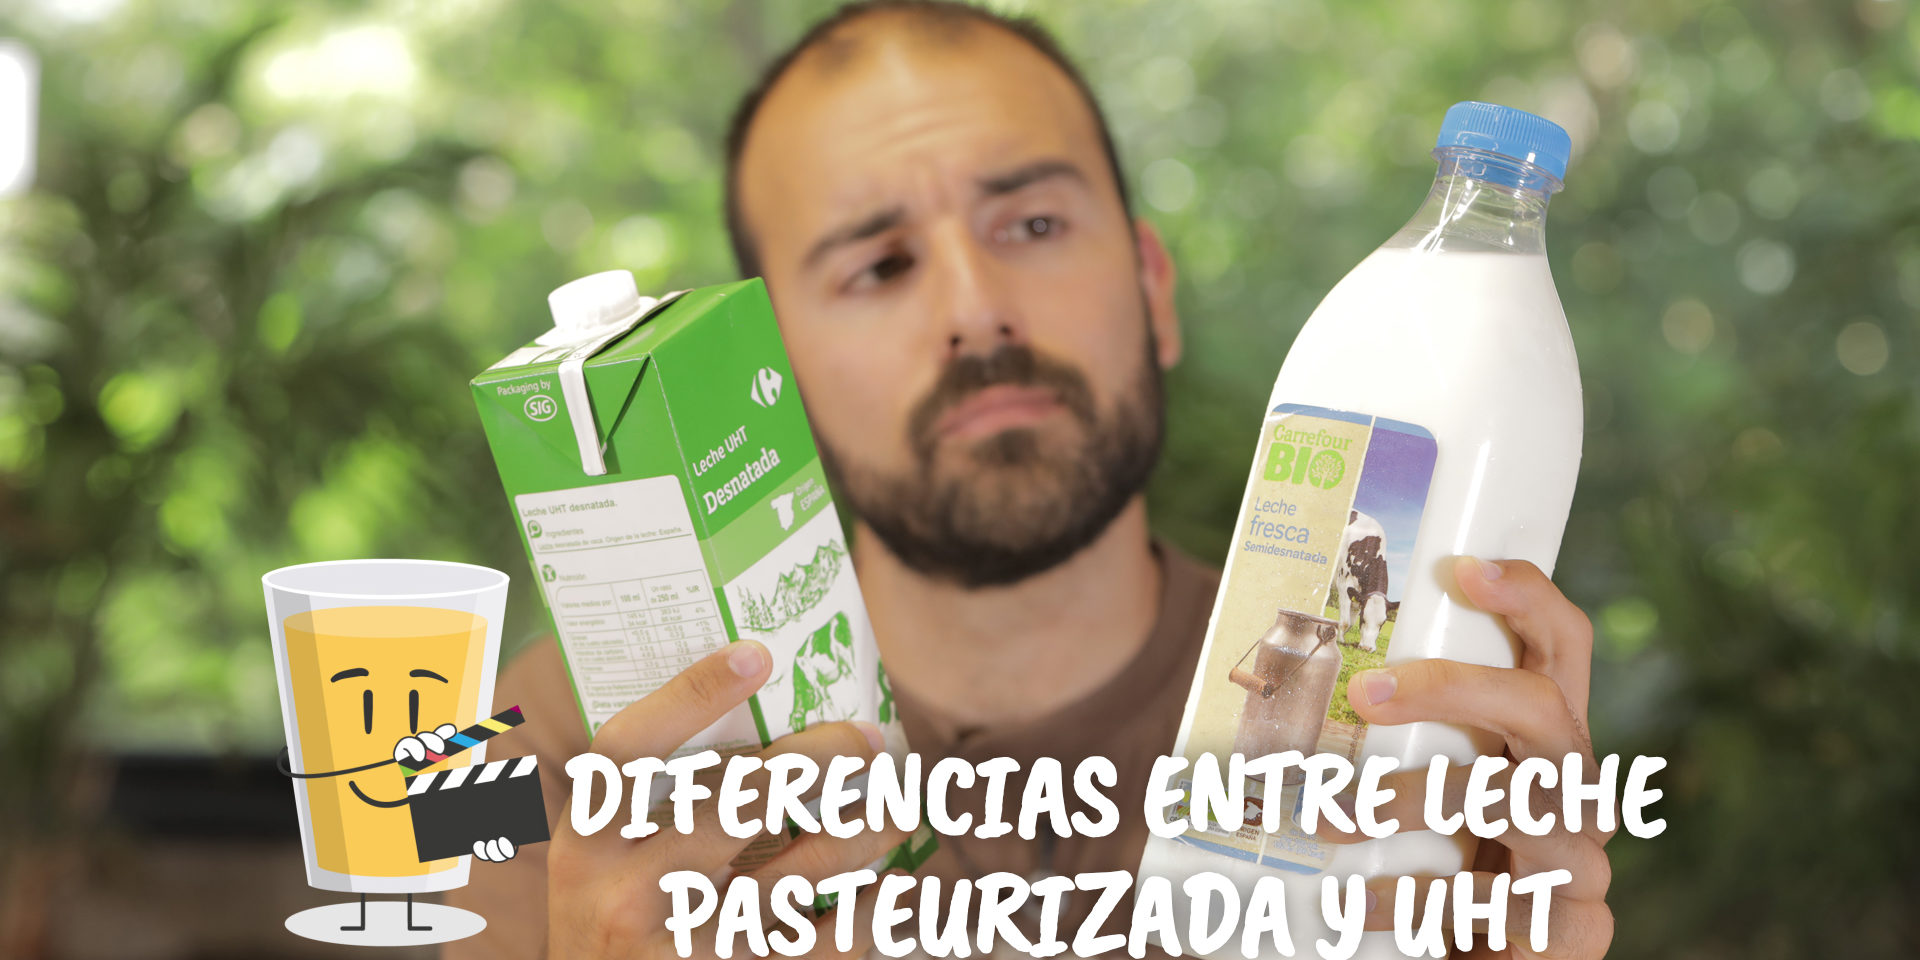 Profeta Cuadrante dieta Leche pasteurizada vs leche UHT – Mi Dieta Cojea